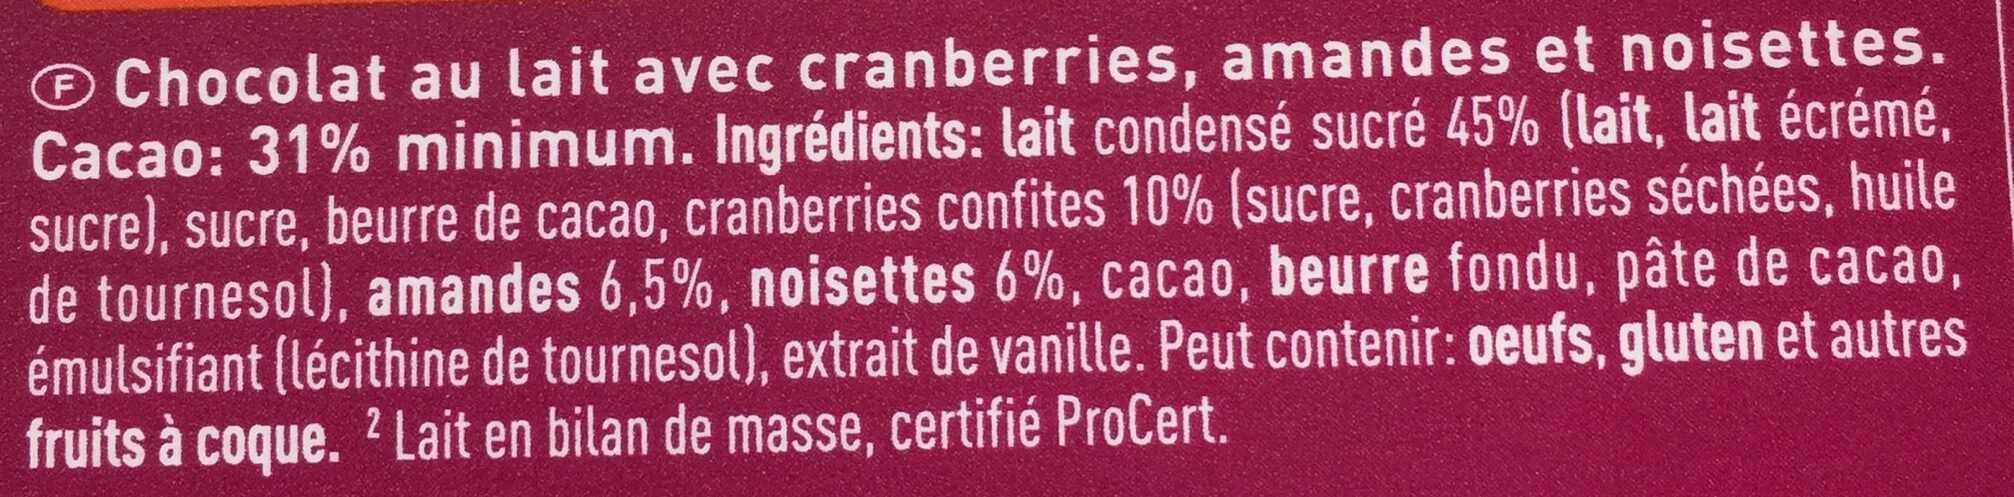 Lait cranberries amandes noisettes - Ingredienti - fr